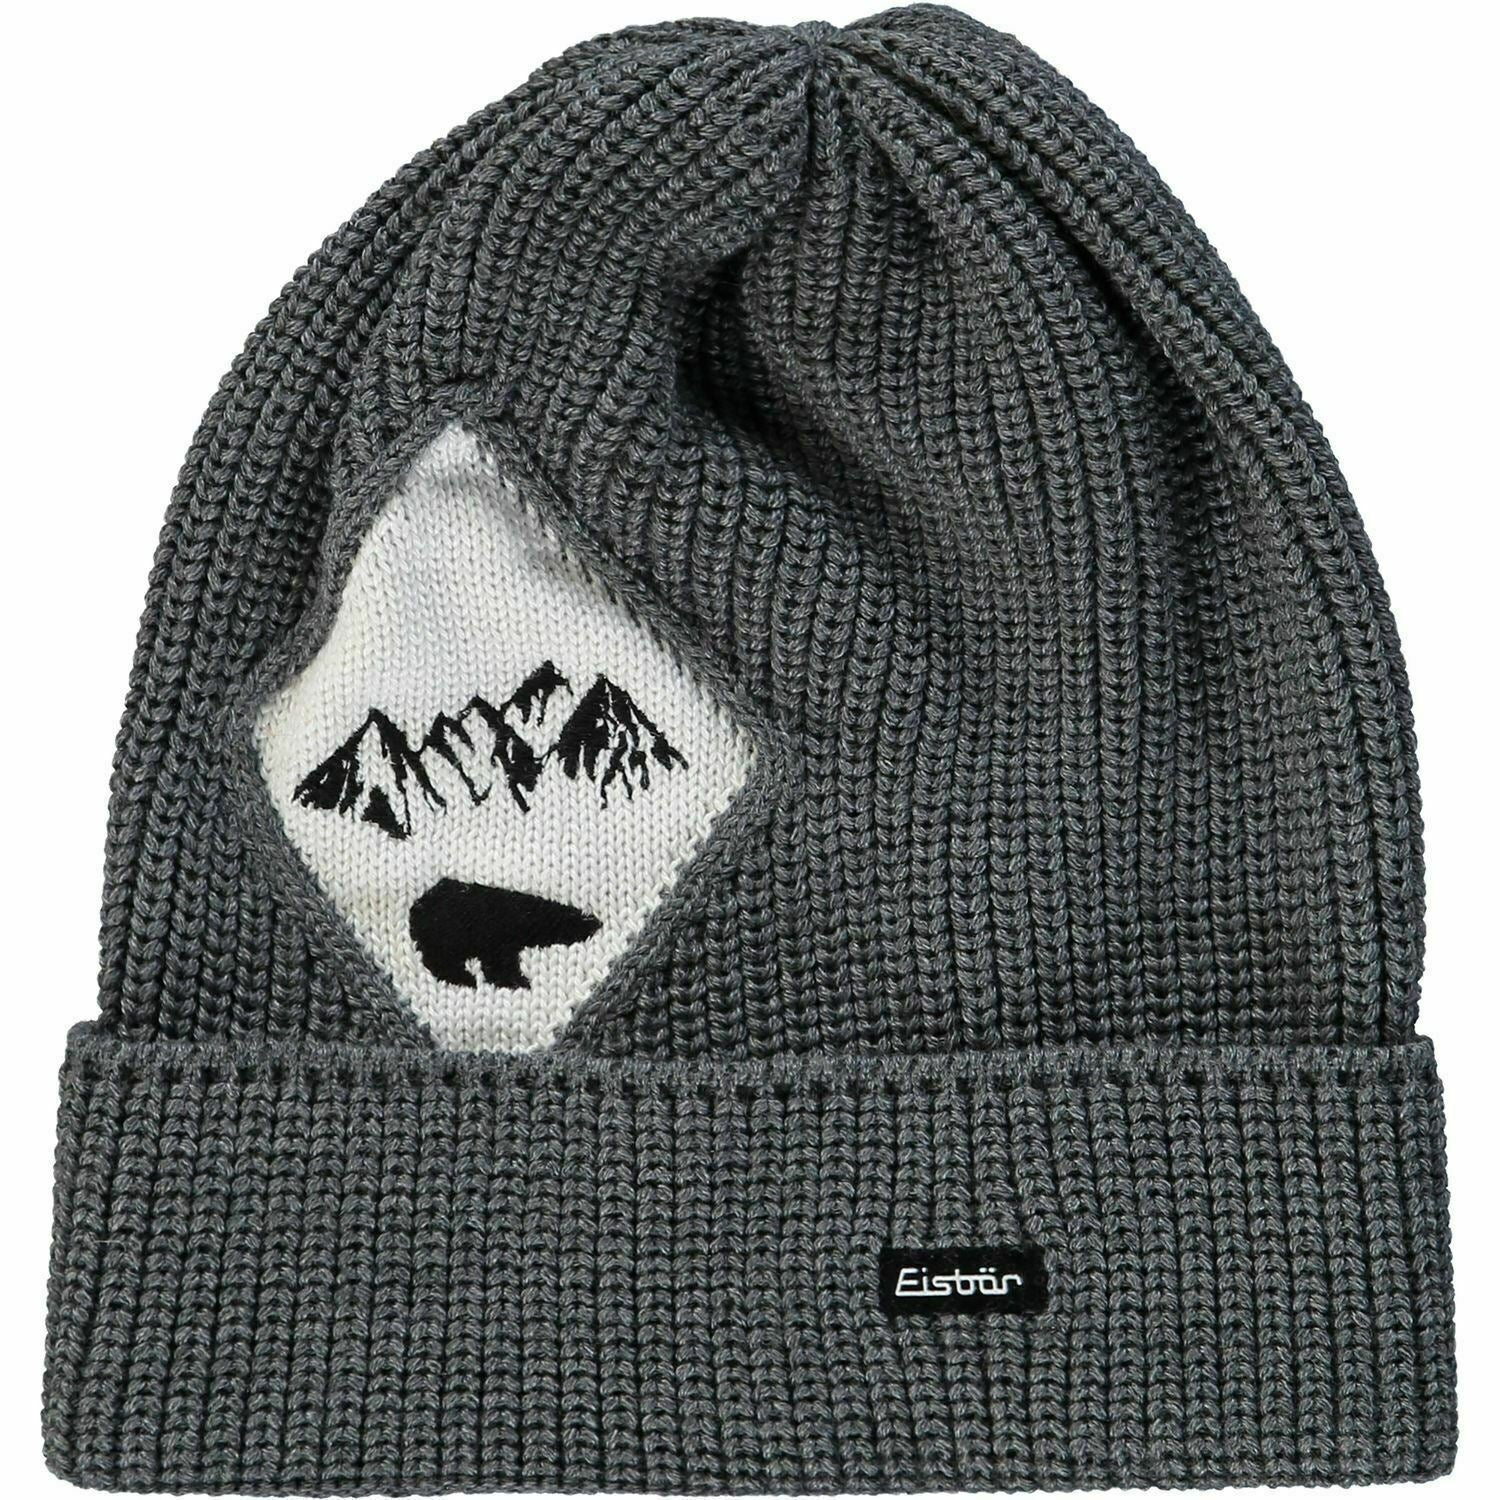 Men's EISBAR Ski Hat Grey & White Wool Blend Beanie Hat